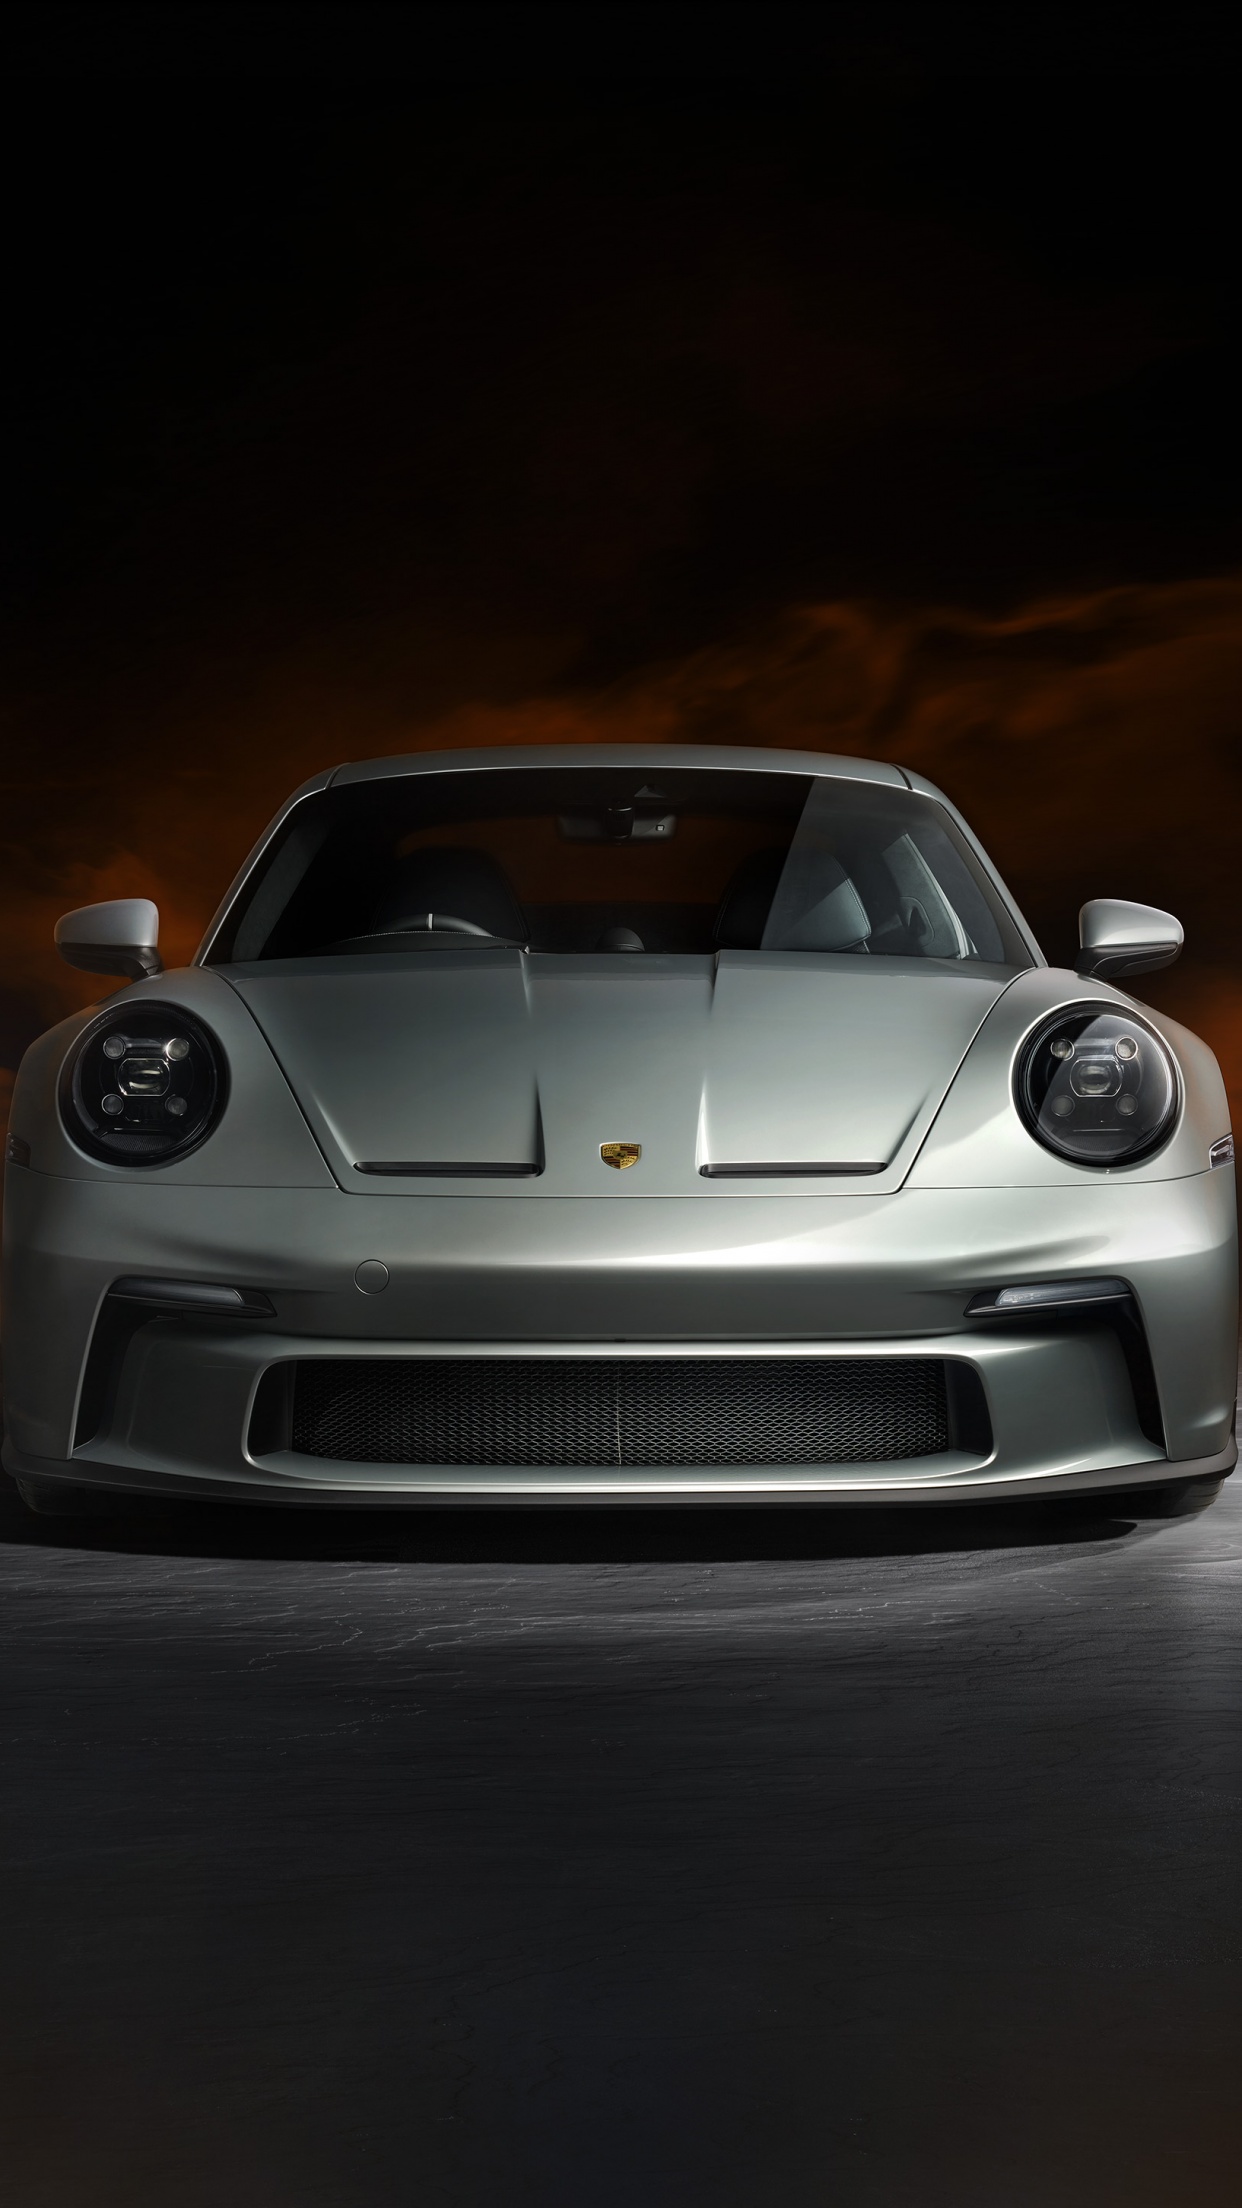 Khám phá hình ảnh Porsche 911 GT3, chiếc siêu xe đầy sức mạnh từ động cơ đến thiết kế. Sự kết hợp sáng tạo giữa hiệu suất và thẩm mỹ tạo nên một tác phẩm đỉnh cao của sự cân bằng.